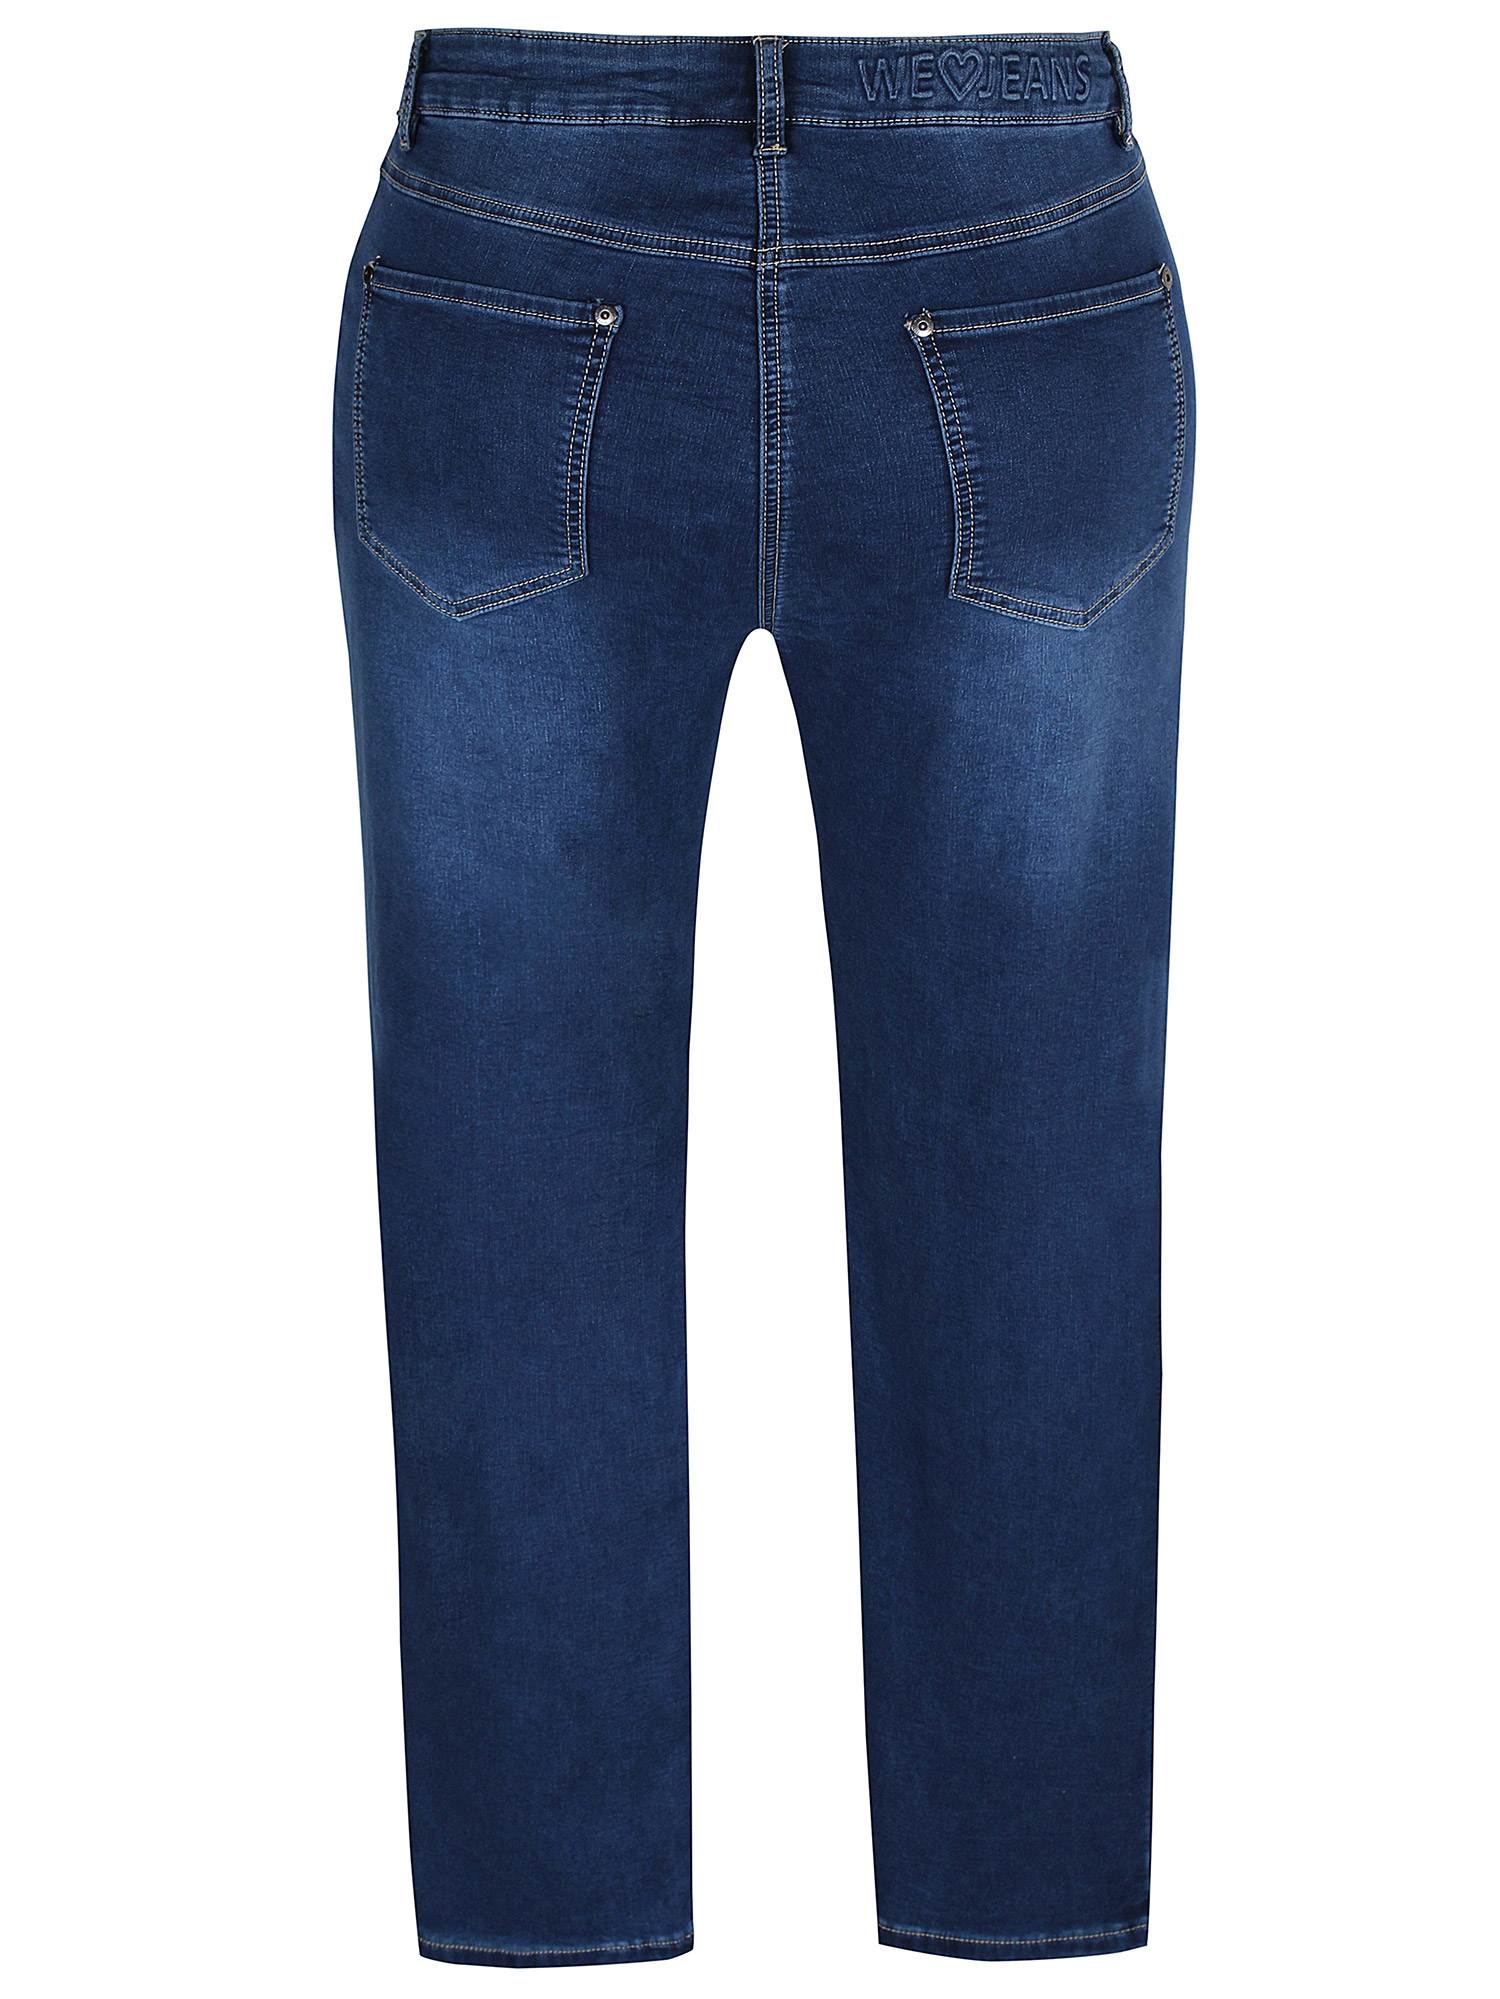 STOMP - Mørkeblå stretch jeans fra Zhenzi